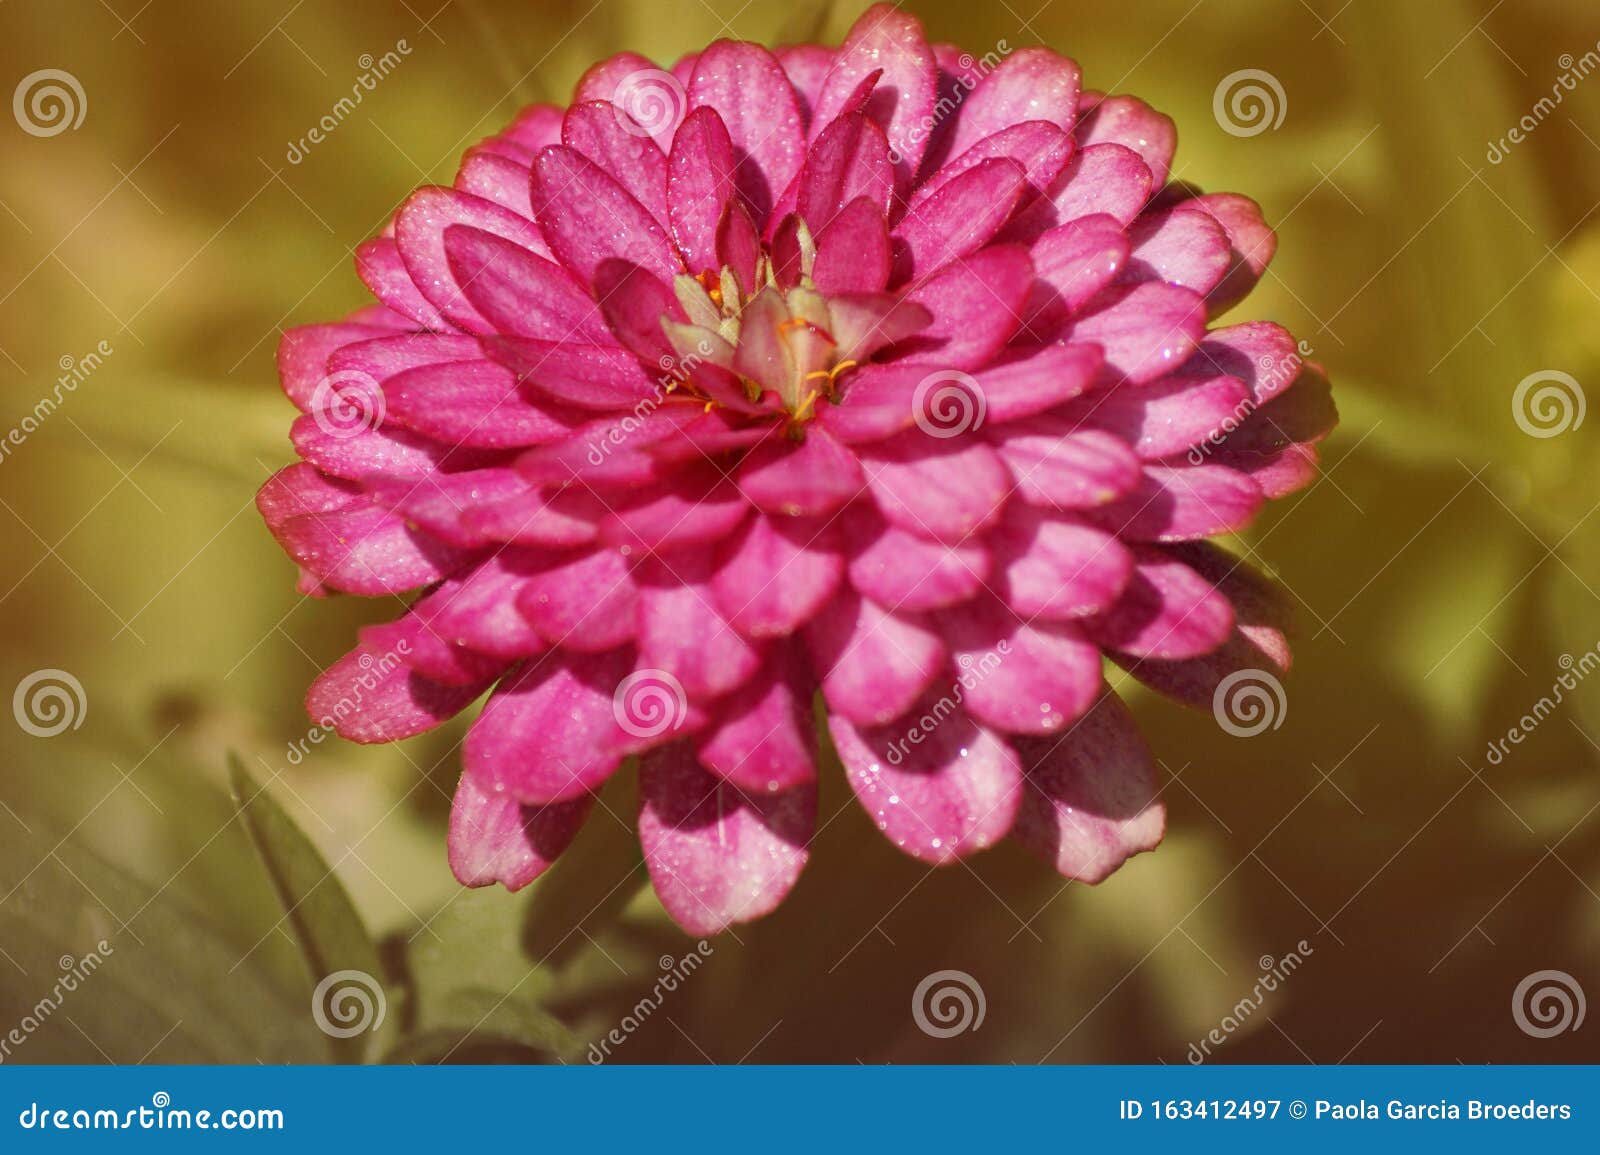 Common Zinnia Pink Flower Stock Image Image Of Botanic 163412497